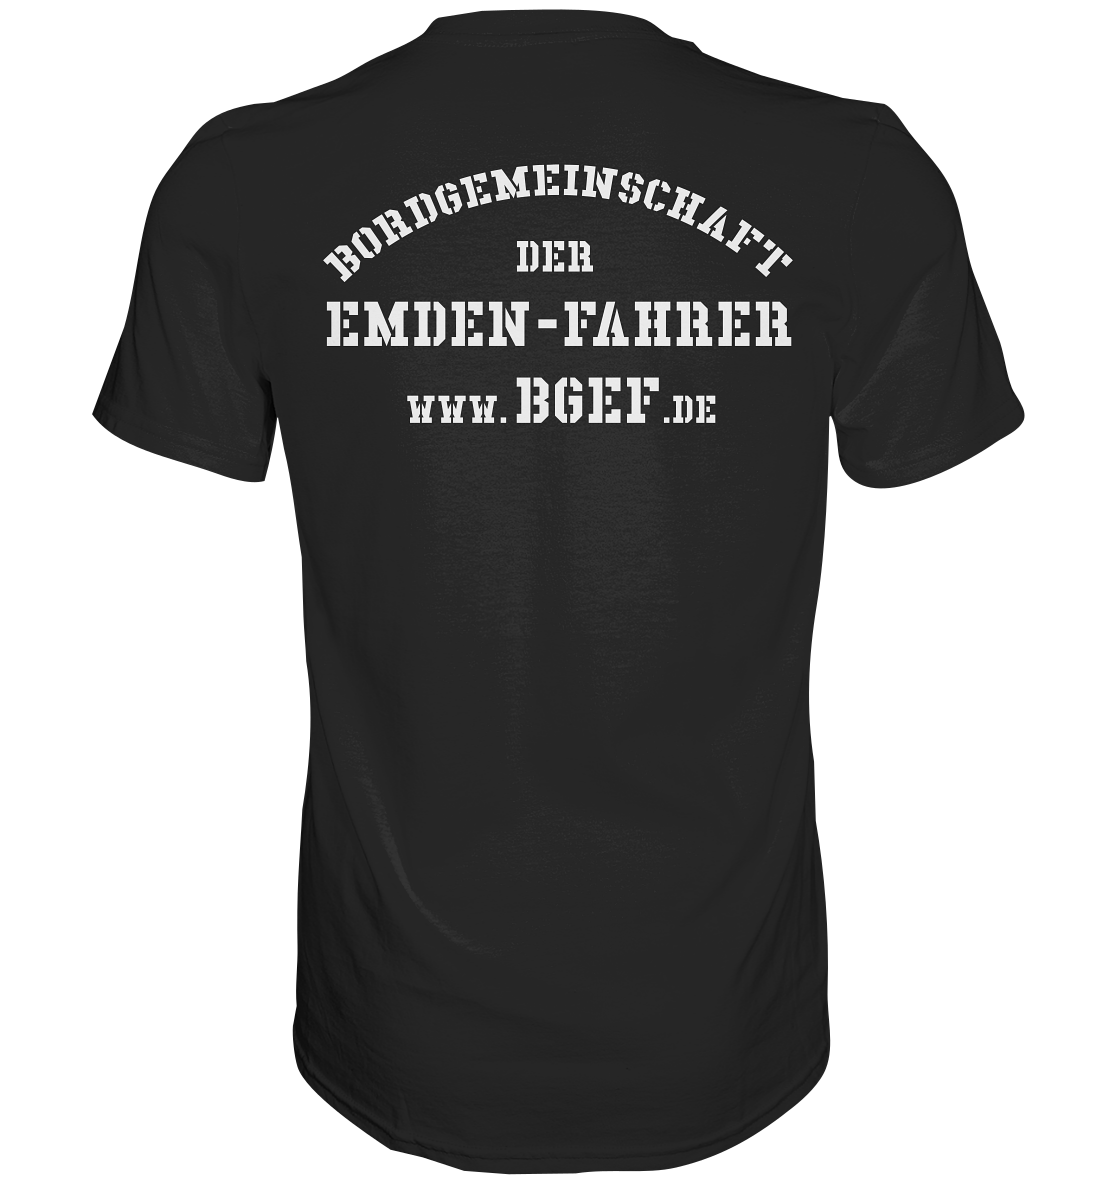 Bordgemeinschaft der Emdenfahrer F221 - Premium Shirt